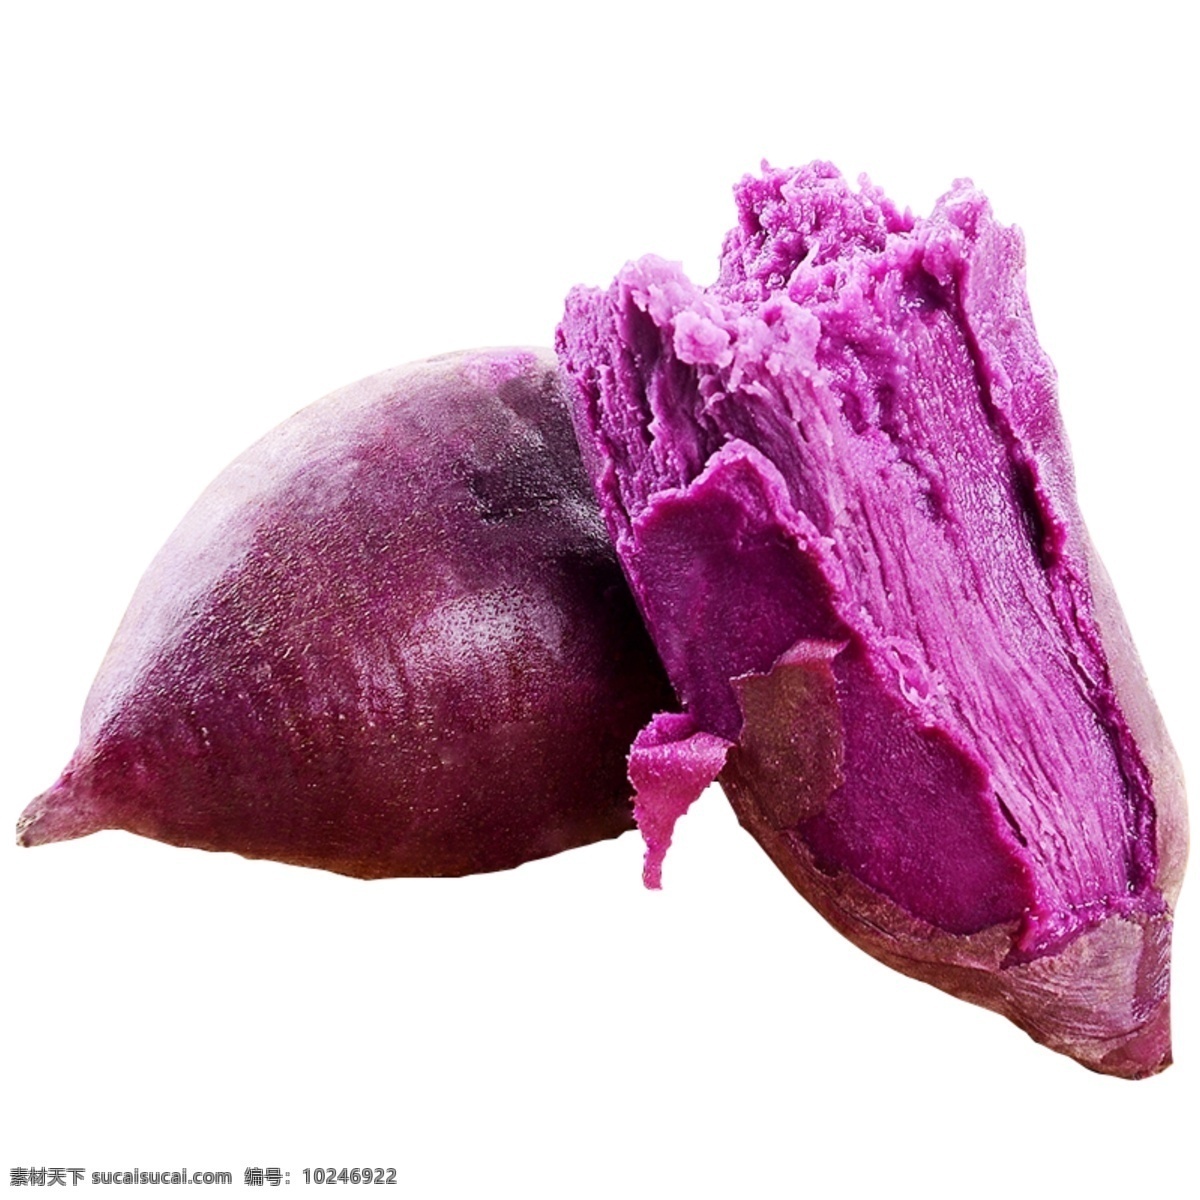 紫 薯 番薯 抠 图 透明 底 紫薯 紫番薯 小番薯 抠图 透明底 分层